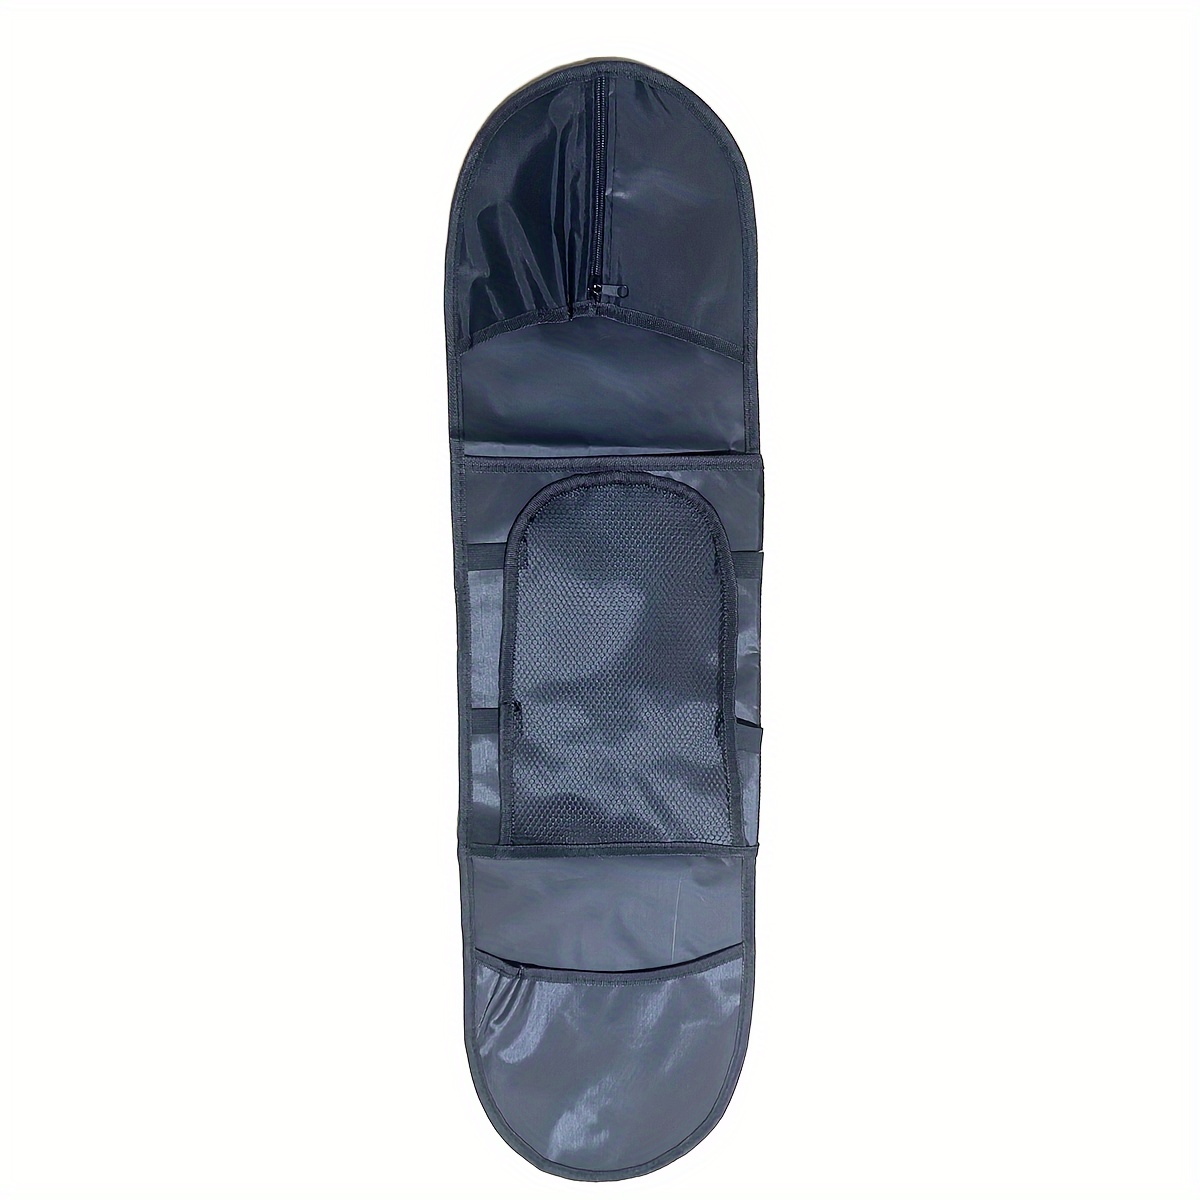 Sac à roulettes, sac à dos étanche pour skateboard avec bretelles  réglables